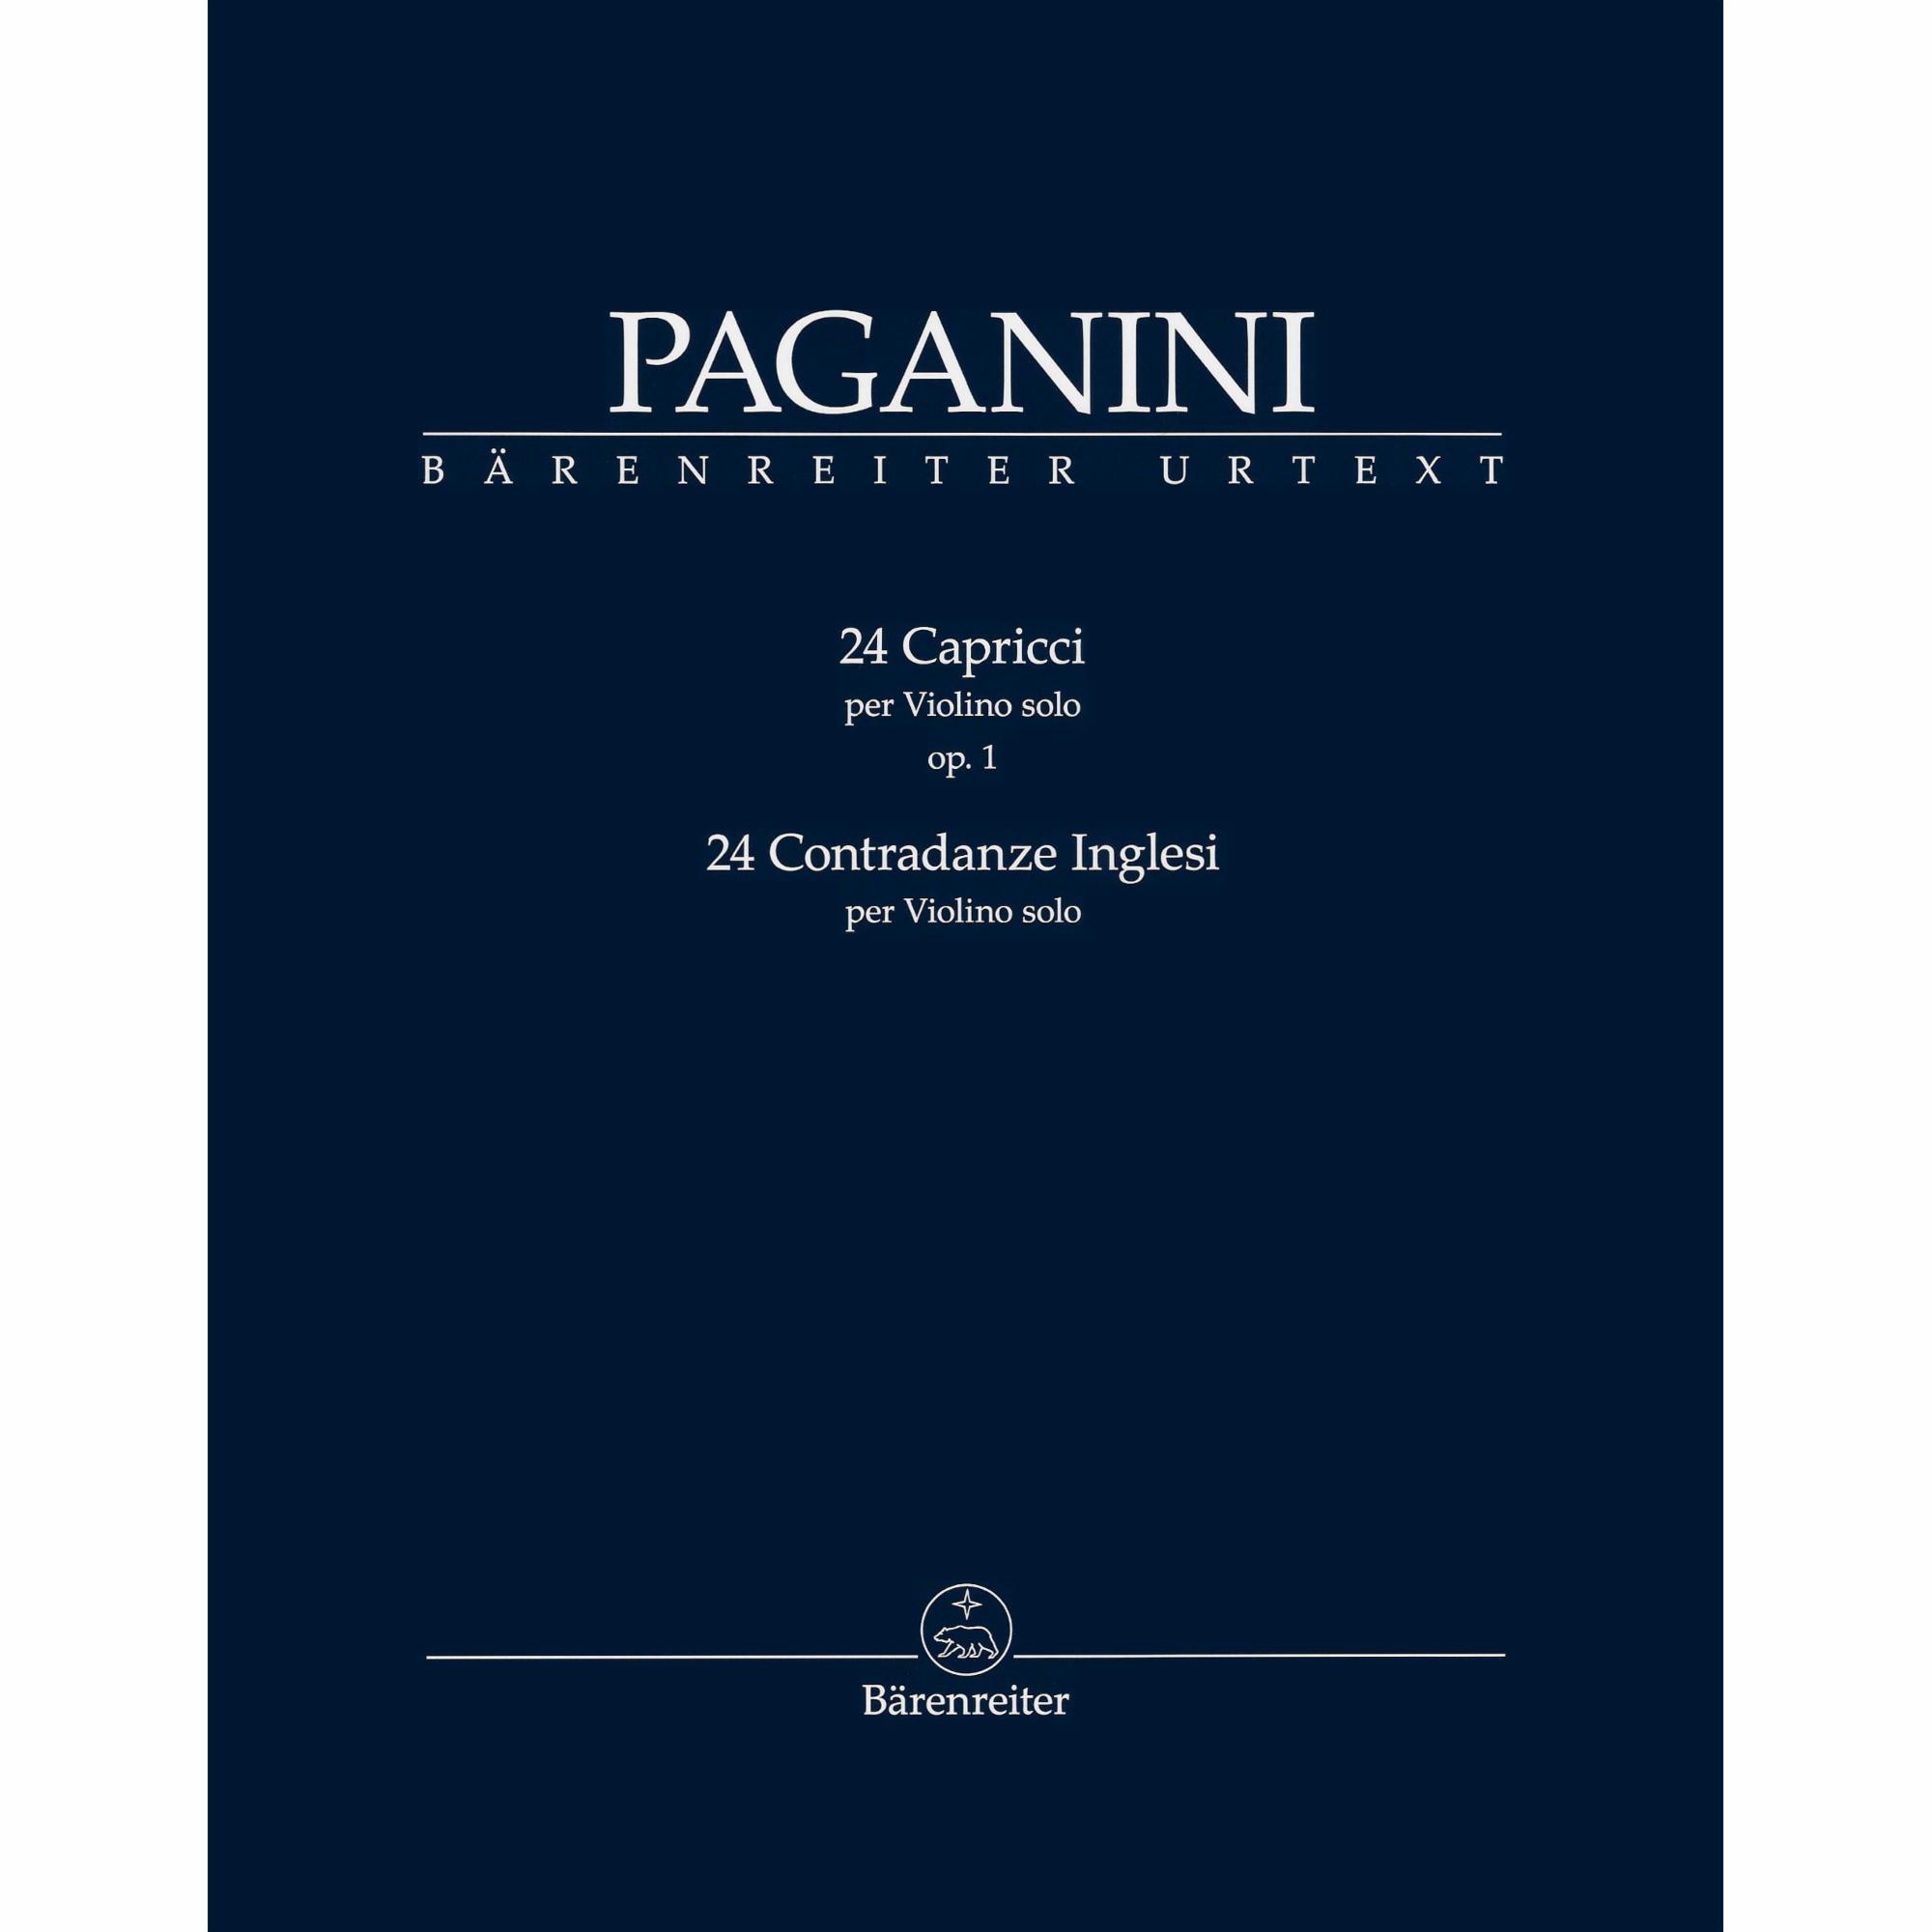 Paganini -- 24 Caprices, Op. 1 and 24 Contradanze Inglesi for Solo Violin